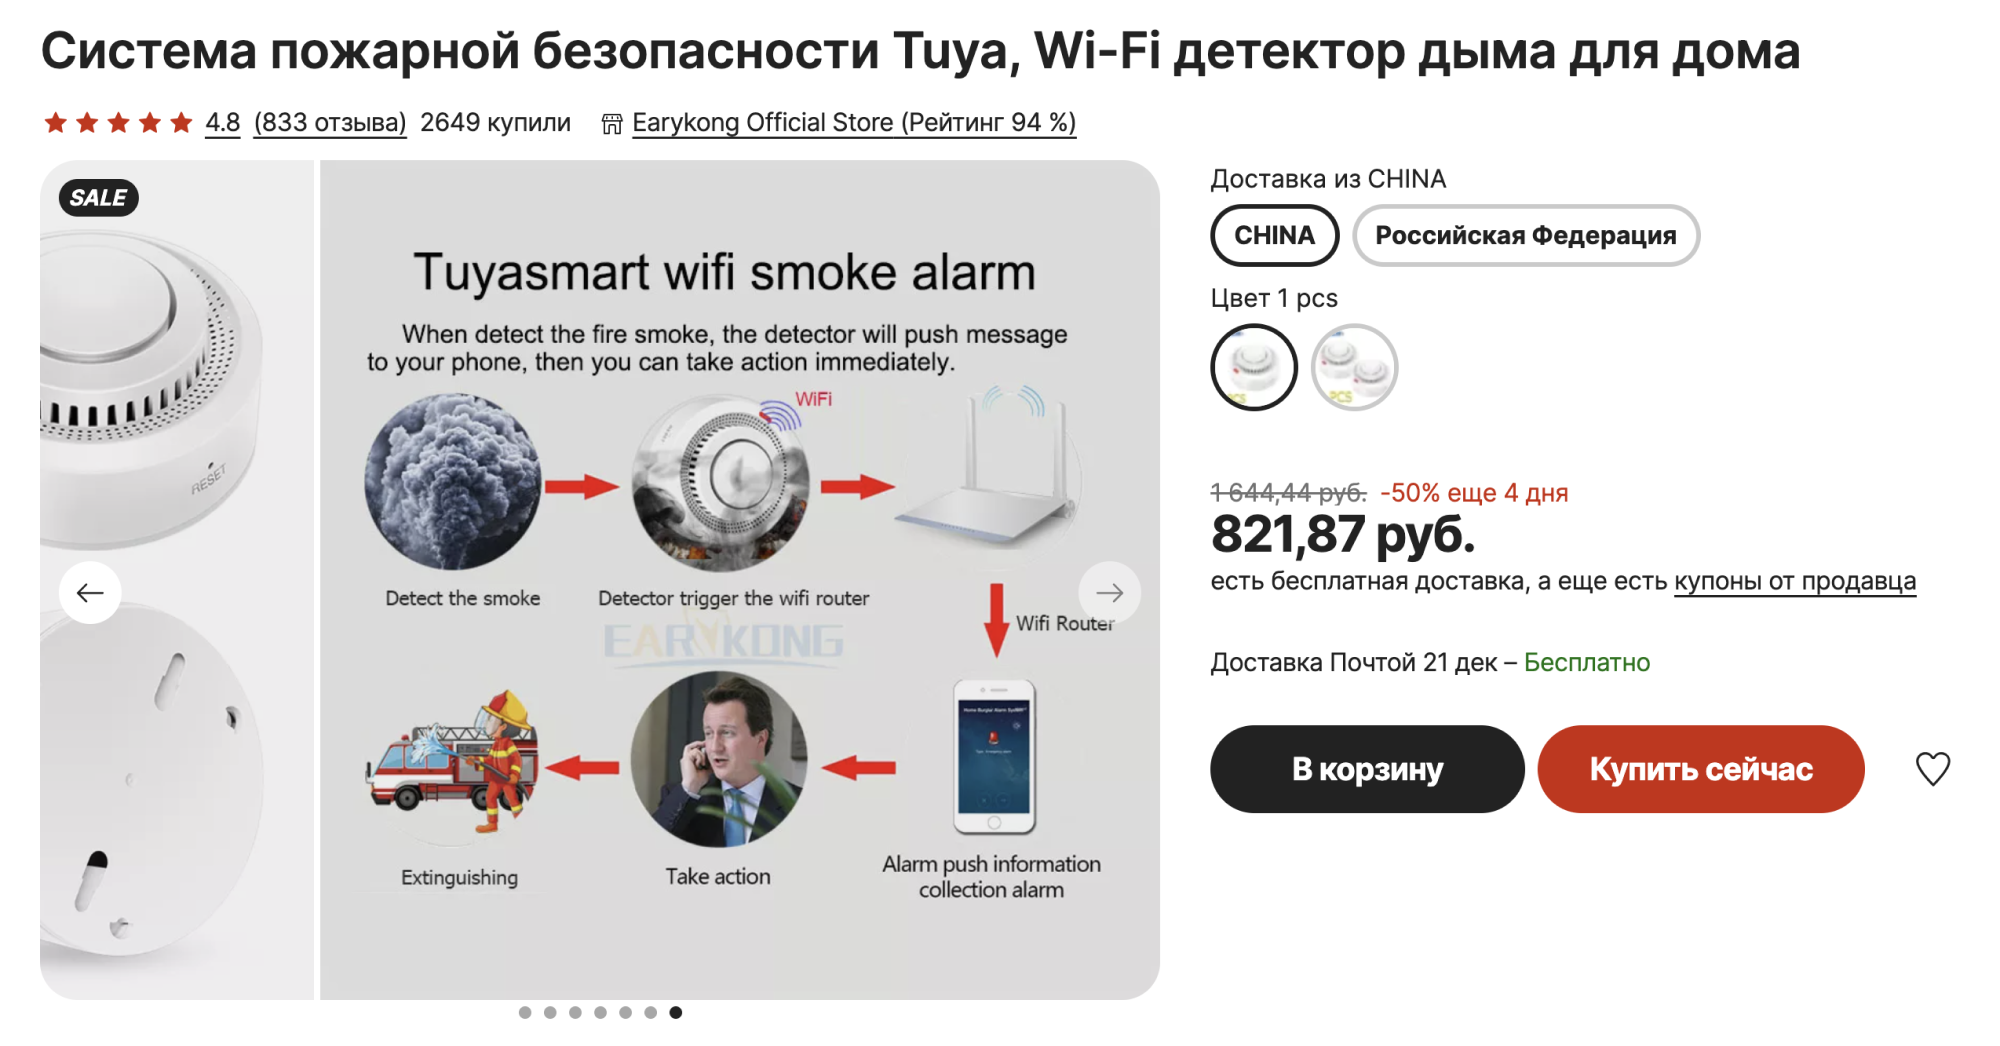 В помещении, где стоит датчик дыма, нельзя курить. Источник: aliexpress.ru